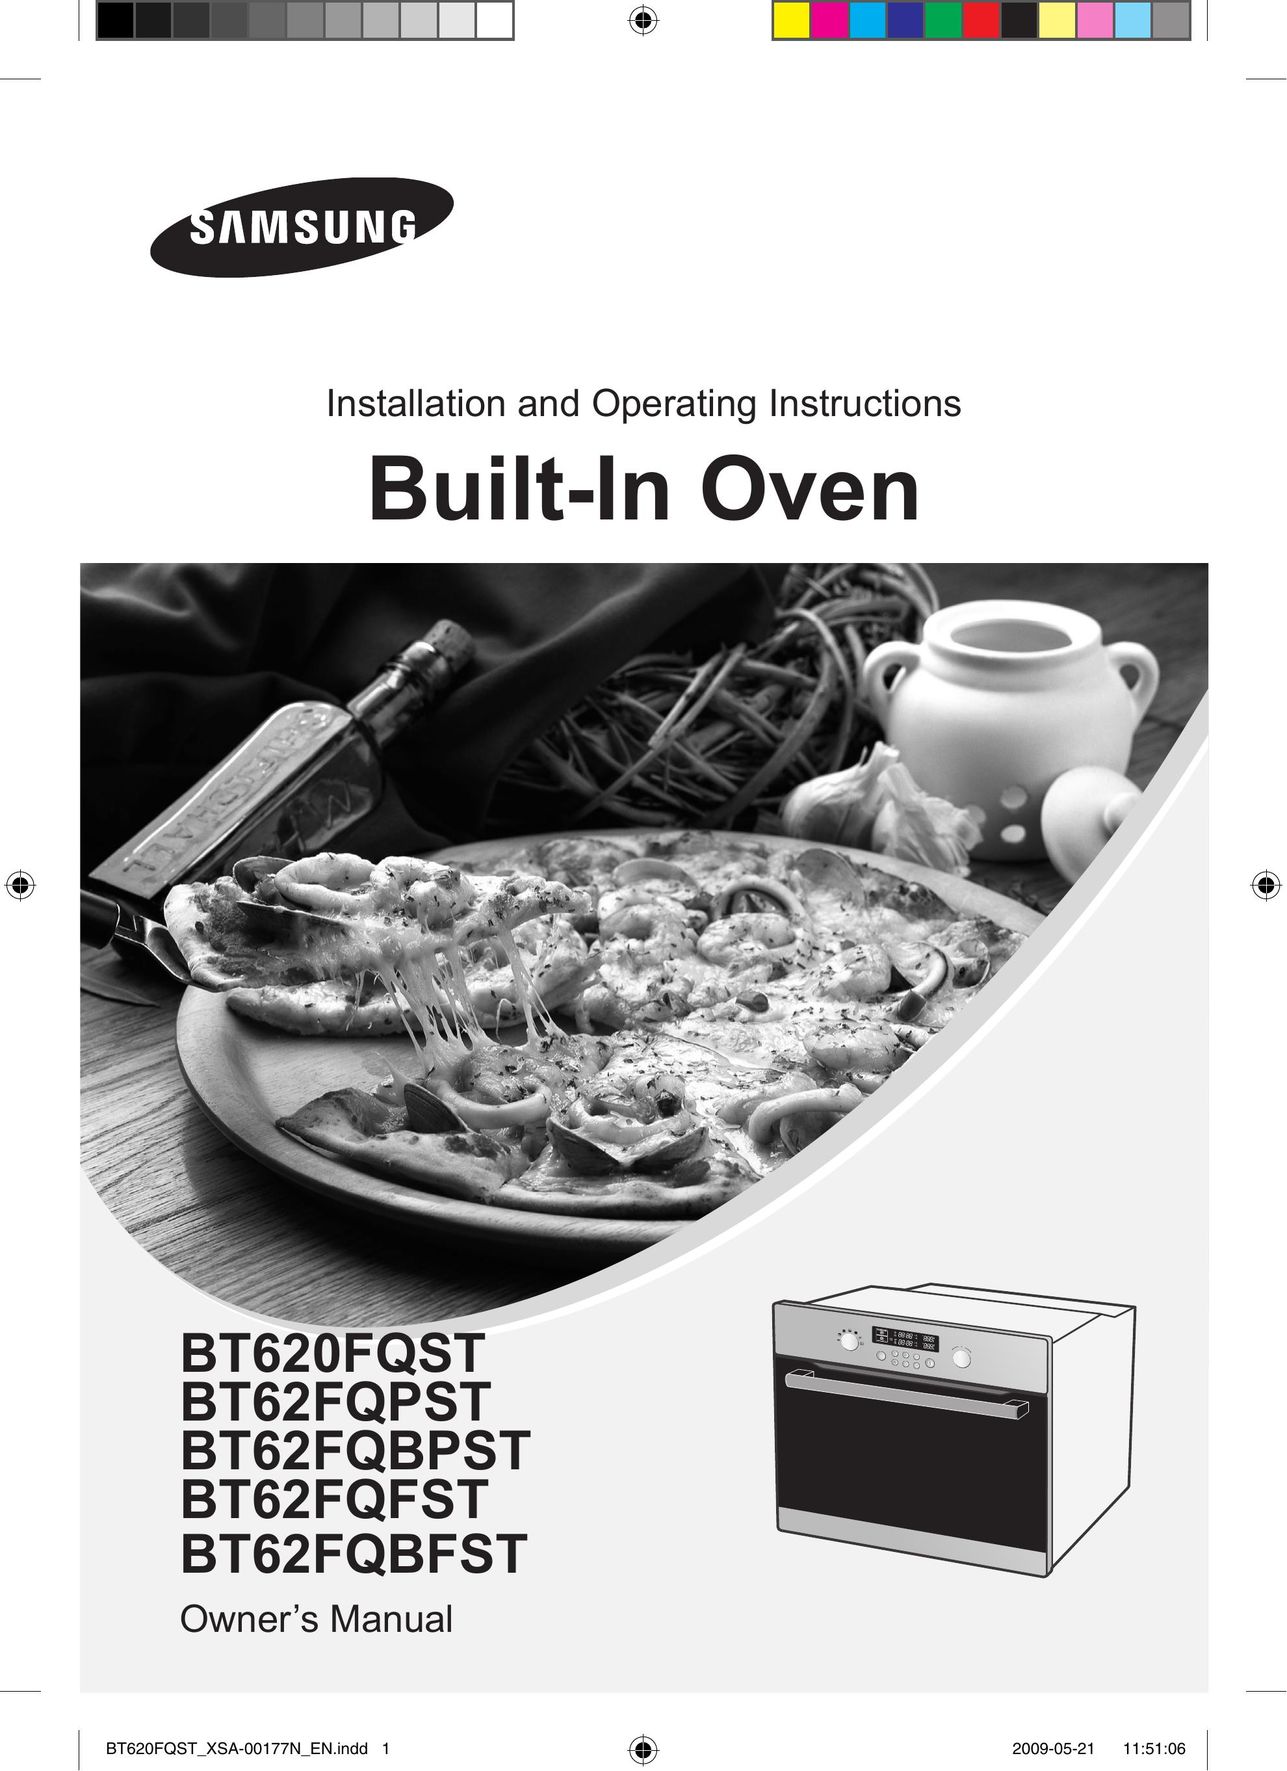 Samsung BT620FQST Oven User Manual